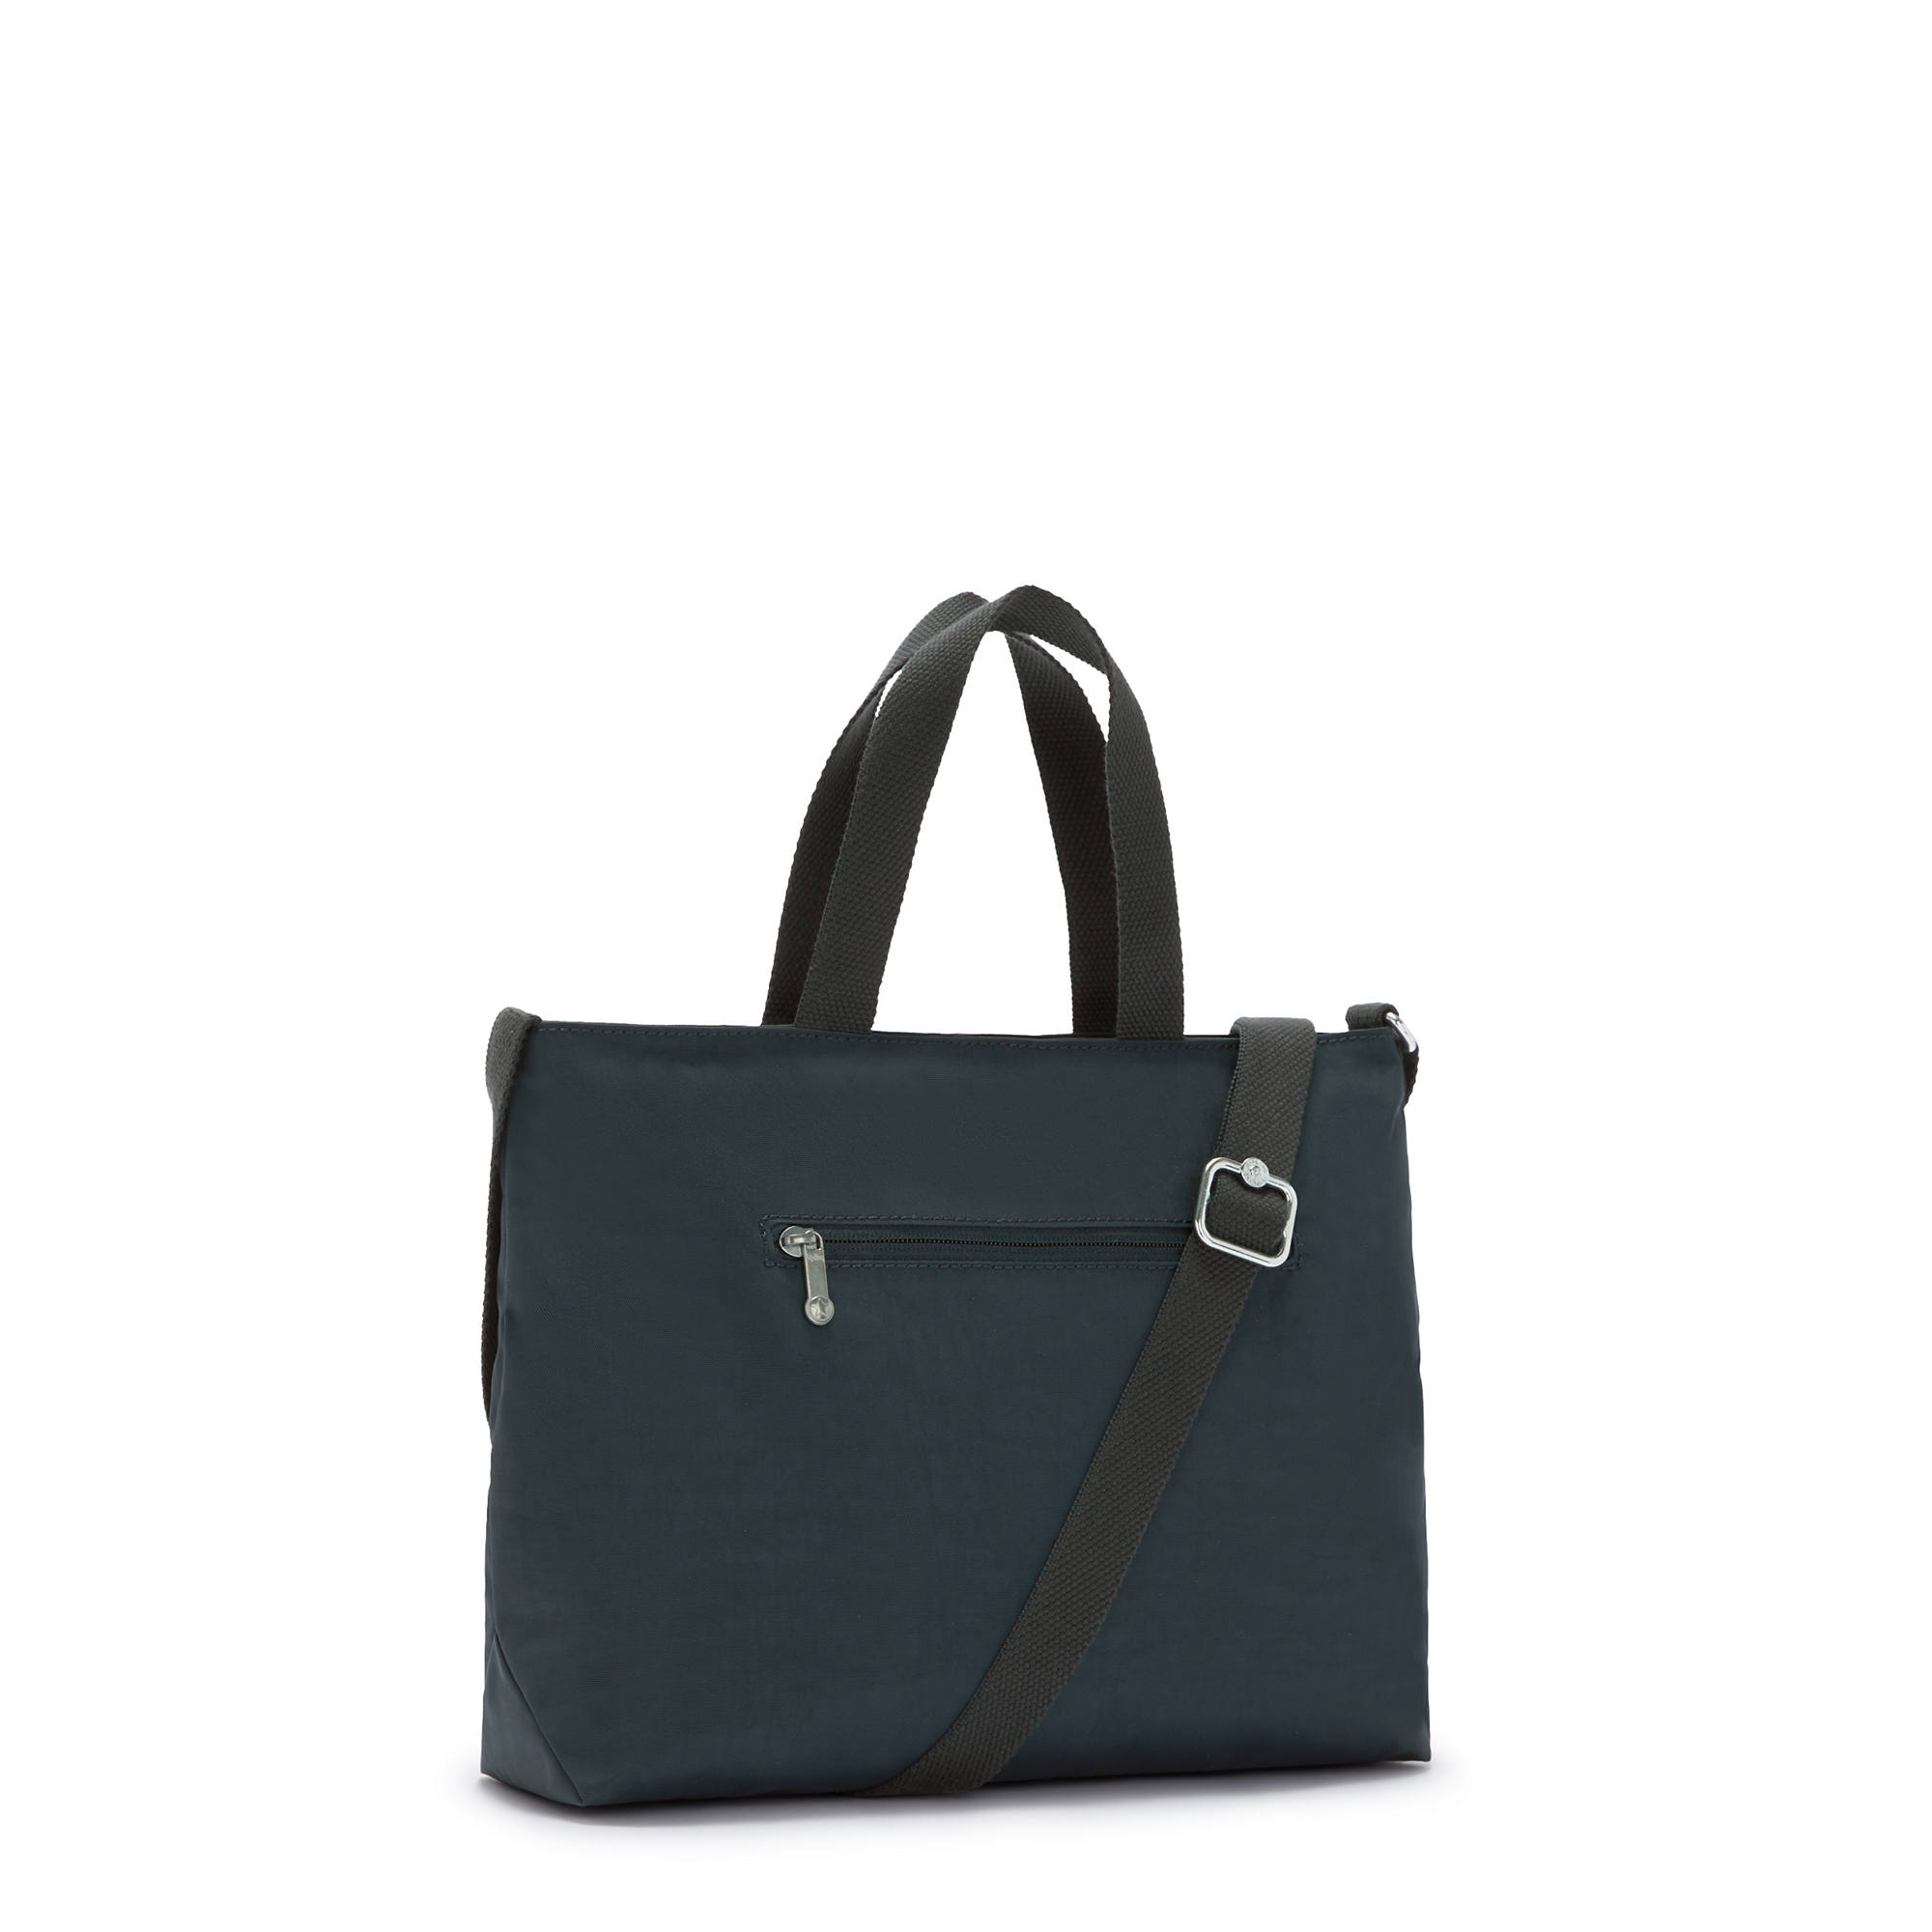 Kipling Women's Tadeo Shoulder Bag with Adjustable Strap | eBay